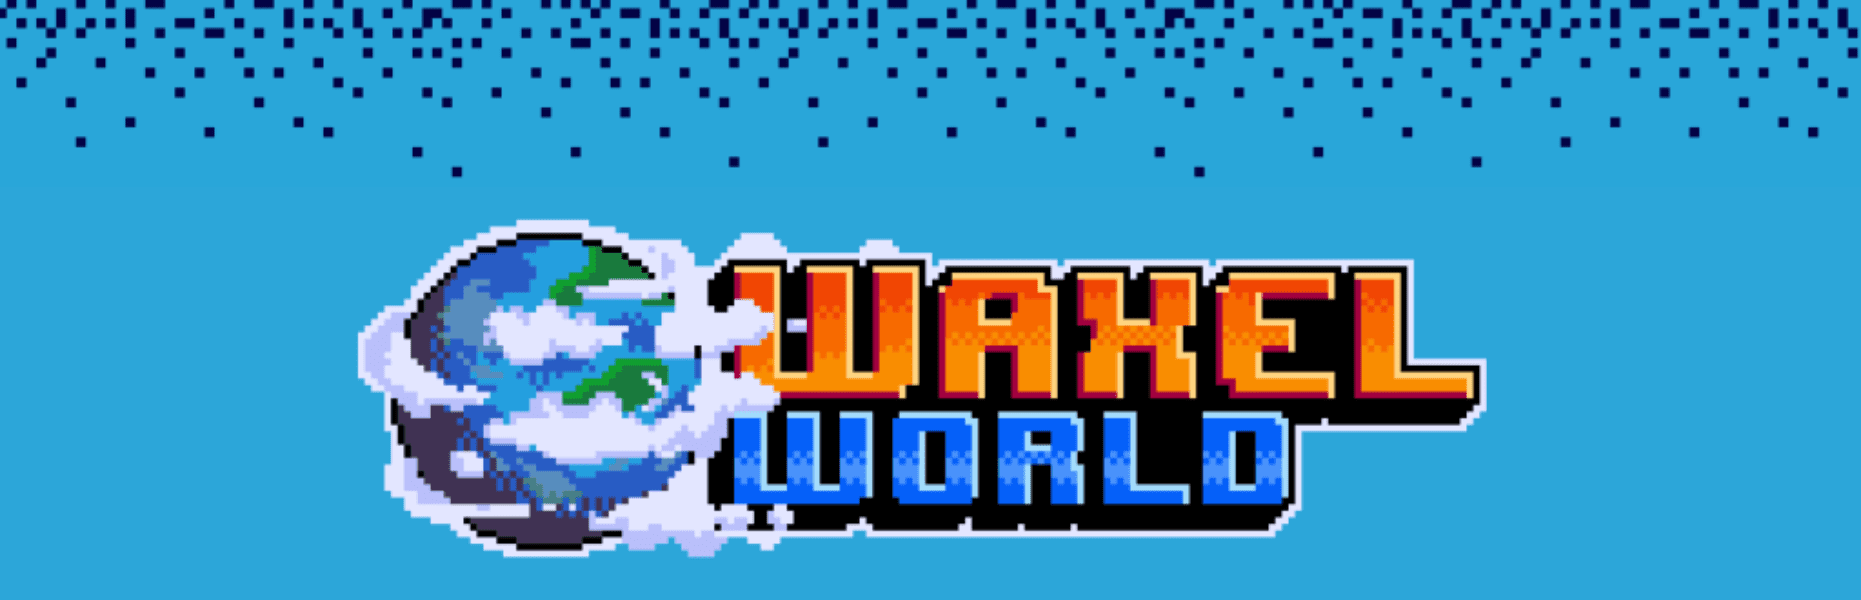 waxel world